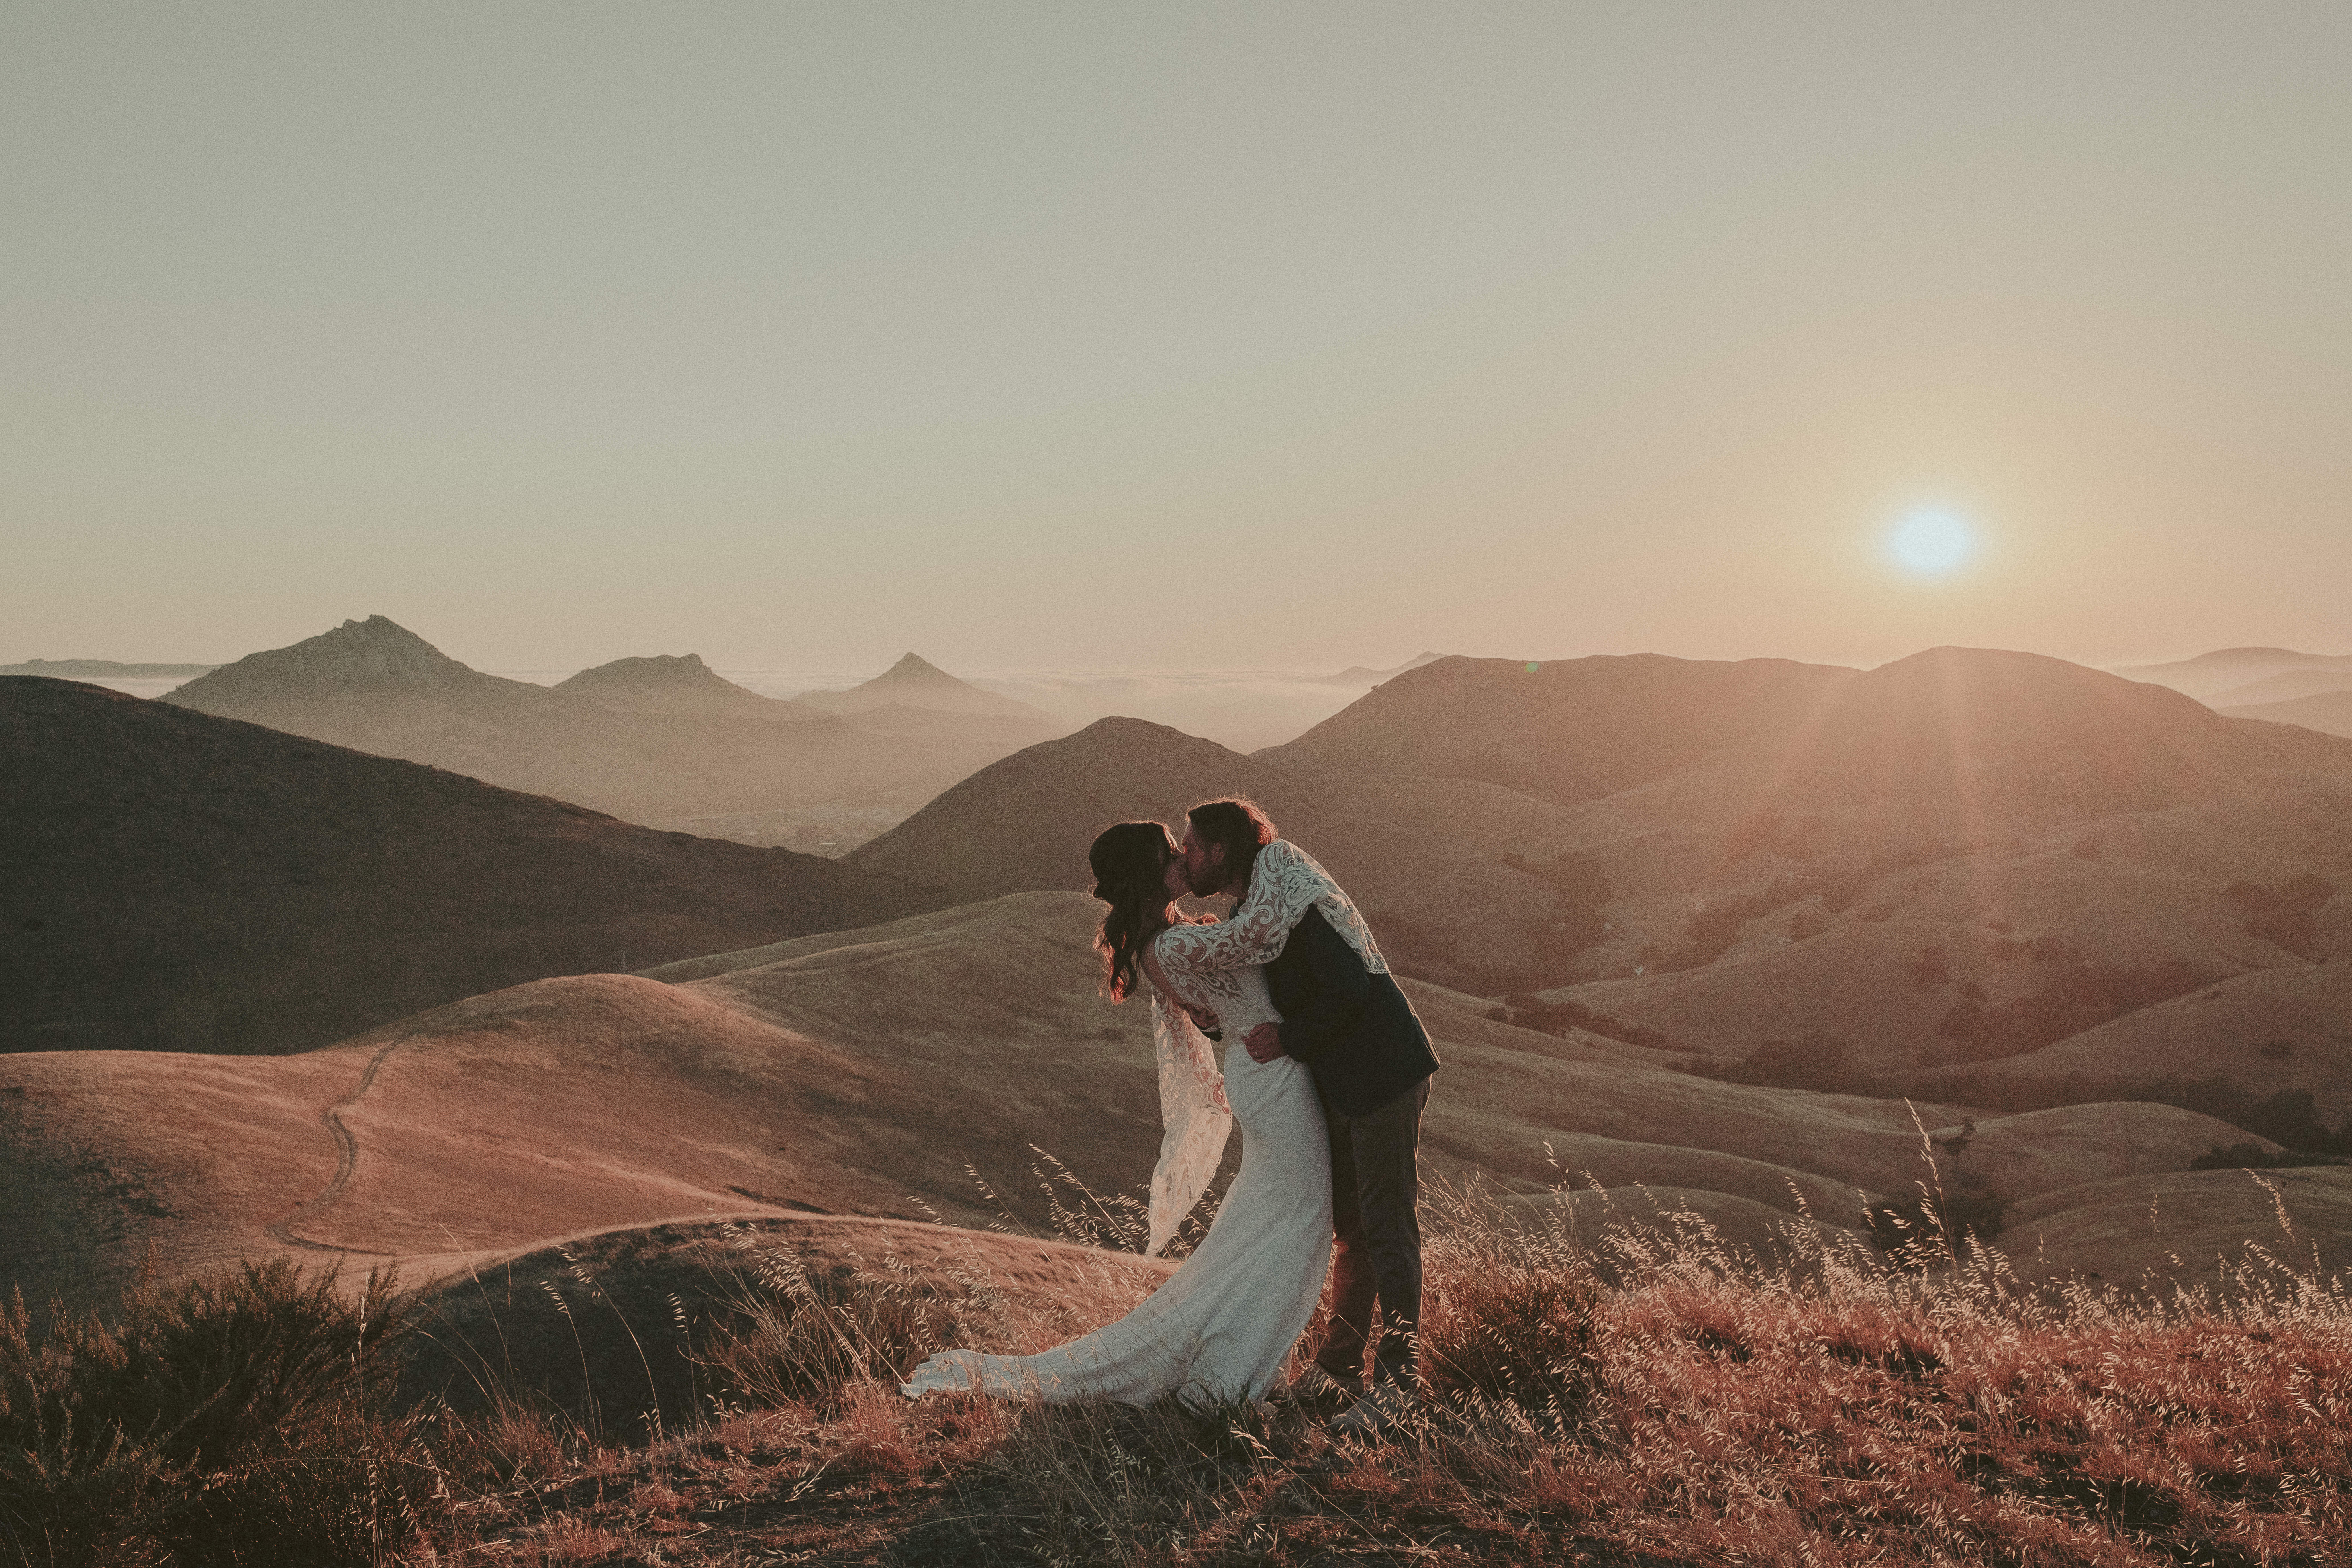 La Cuesta Ranch Wedding, San Luis Obispo Wedding Photographer, SLO Wedding Photographer, James Lester Photography